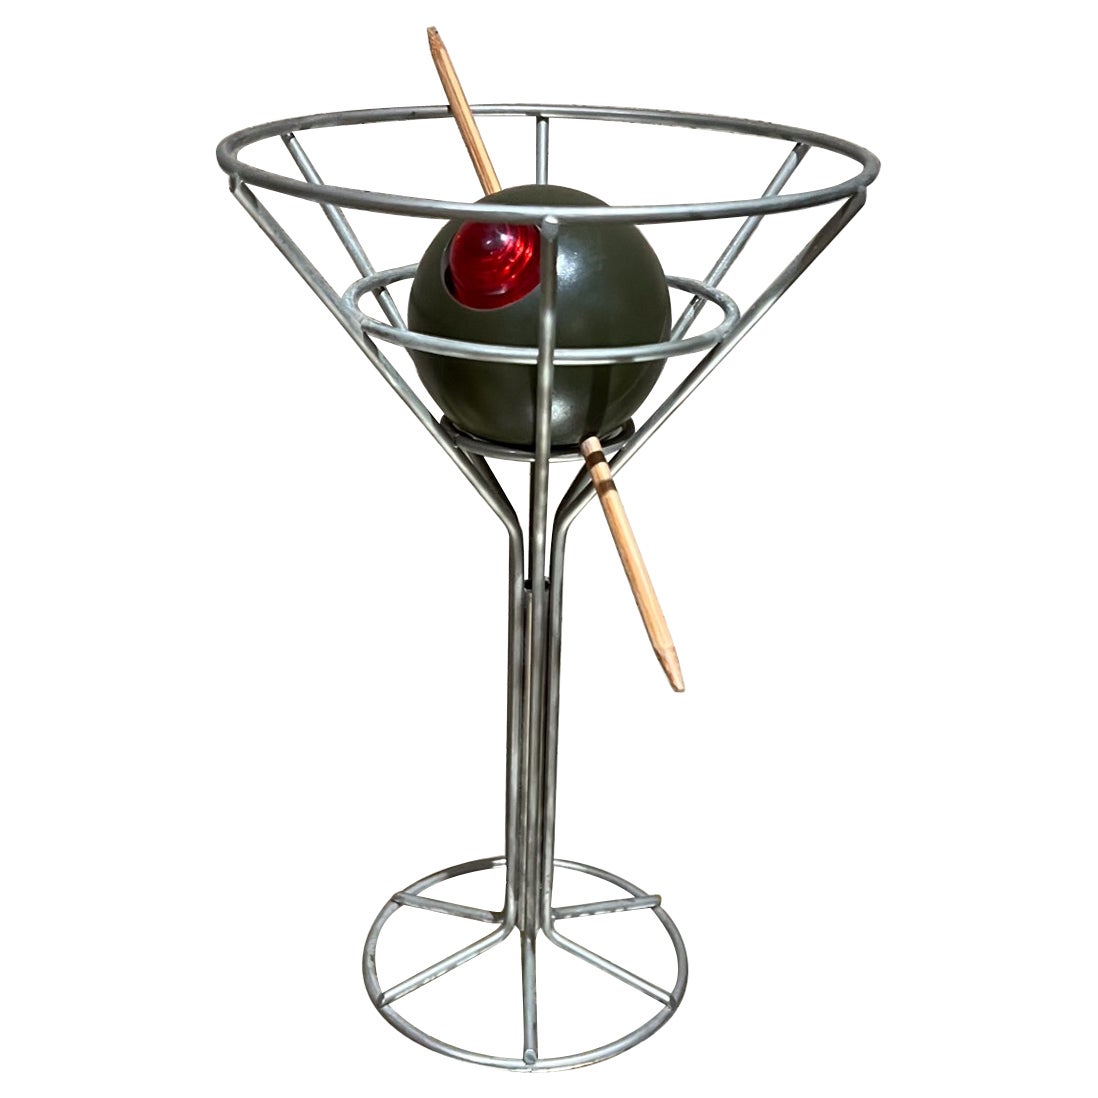 1990er Pop Art dekorative vintage martini mit olive bar lampe von David Krys
Die Postmodern Lamp ist aus verchromtem Kunststoff gefertigt und hat eine pimentrote Glühbirne mit Zahnstocher.
9,75 h x 6,25 Durchmesser
Ohne Kabel, batteriebetrieben,